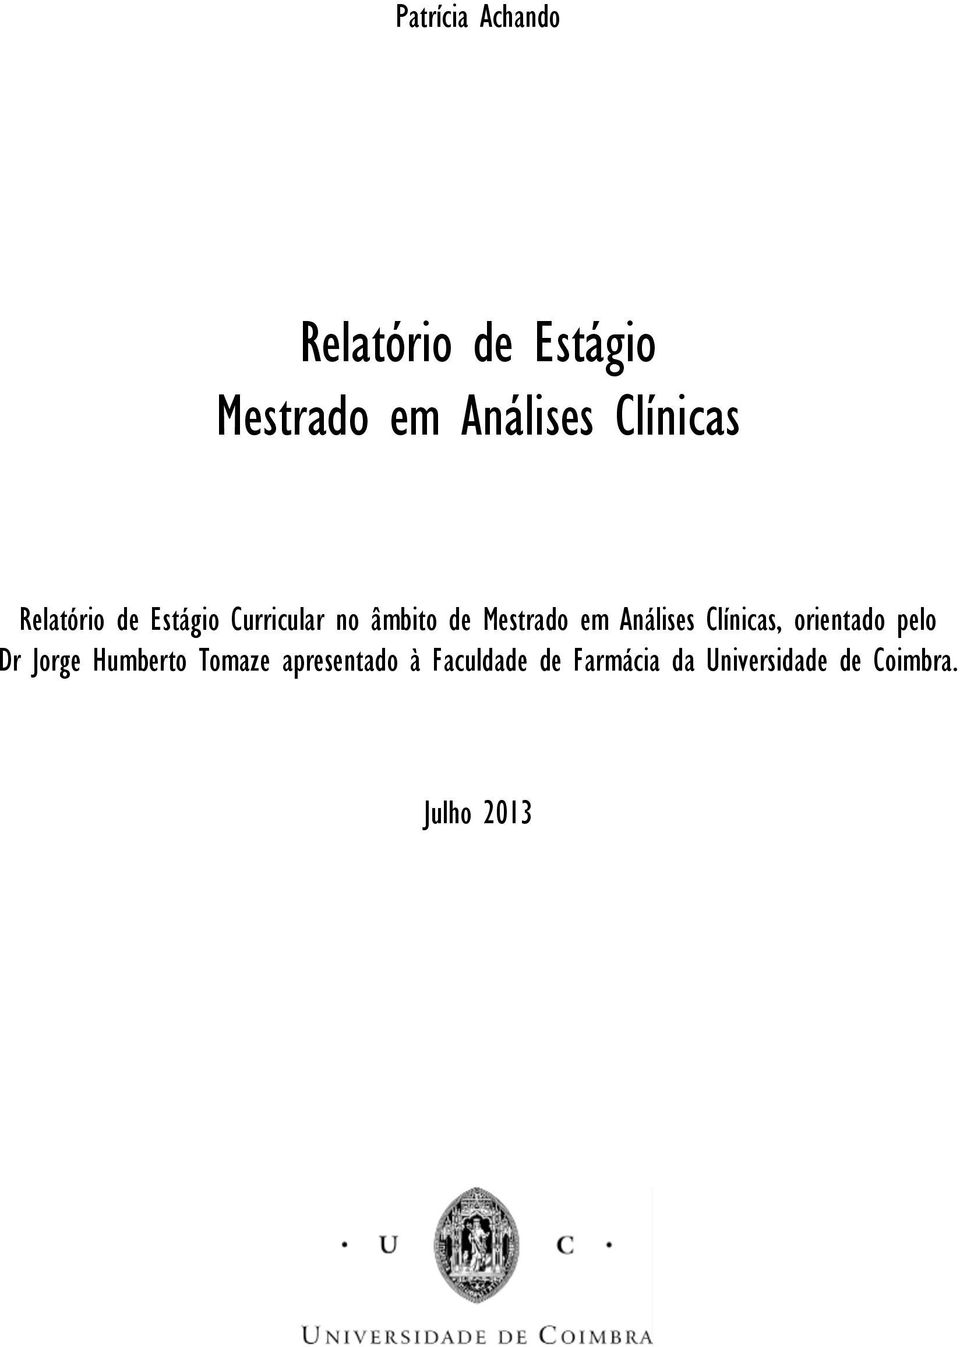 em Análises Clínicas, orientado pelo Dr Jorge Humberto Tomaze